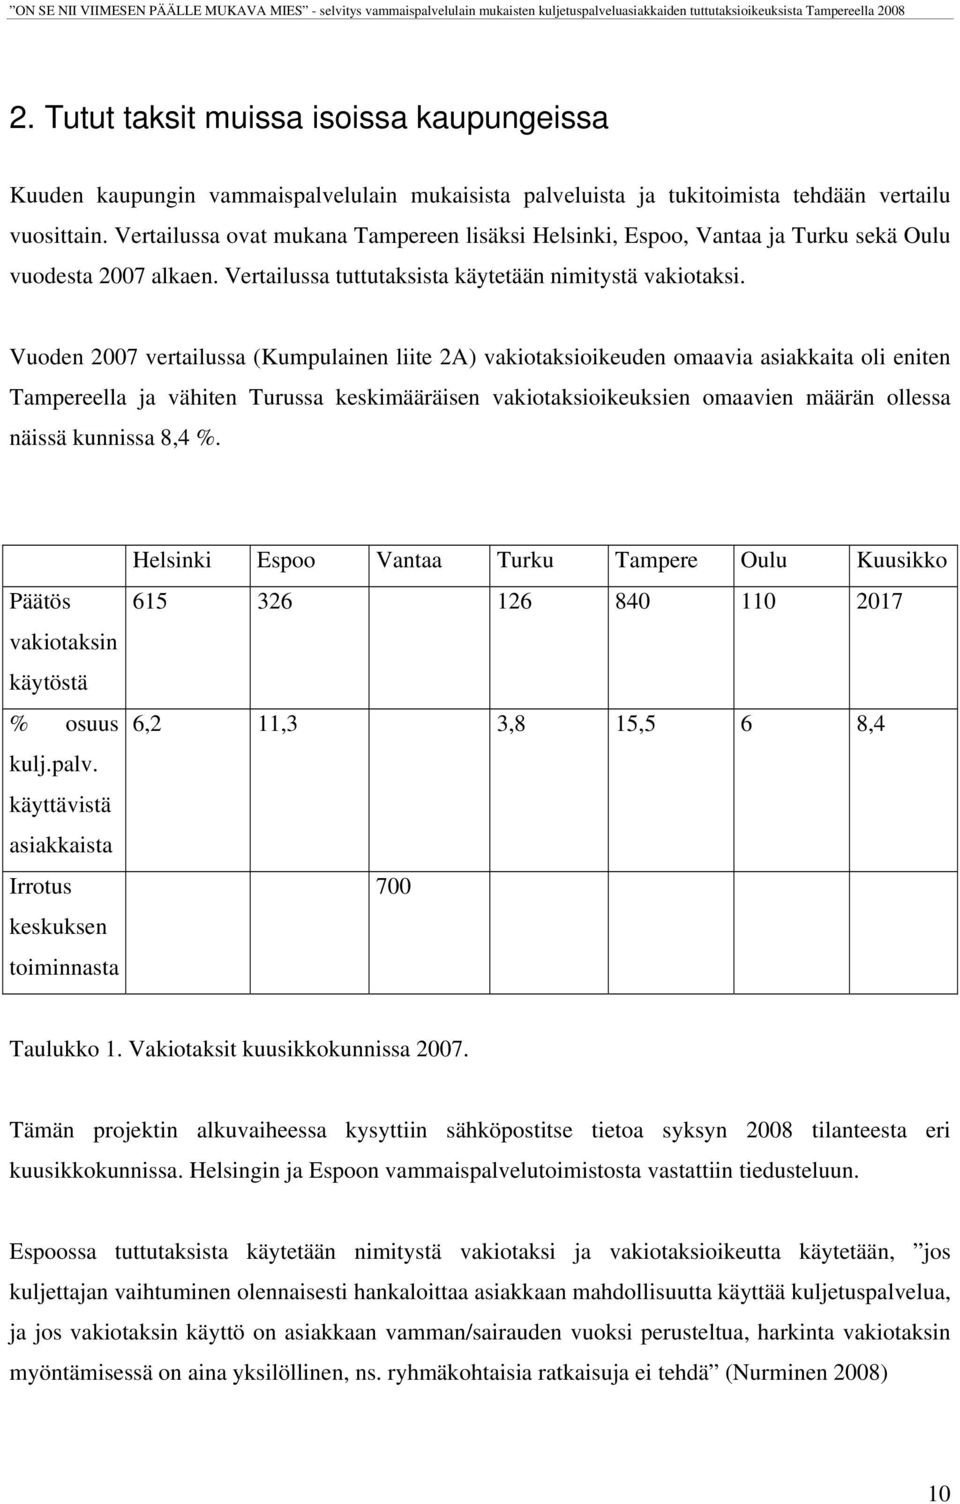 Vuoden 2007 vertailussa (Kumpulainen liite 2A) vakiotaksioikeuden omaavia asiakkaita oli eniten Tampereella ja vähiten Turussa keskimääräisen vakiotaksioikeuksien omaavien määrän ollessa näissä